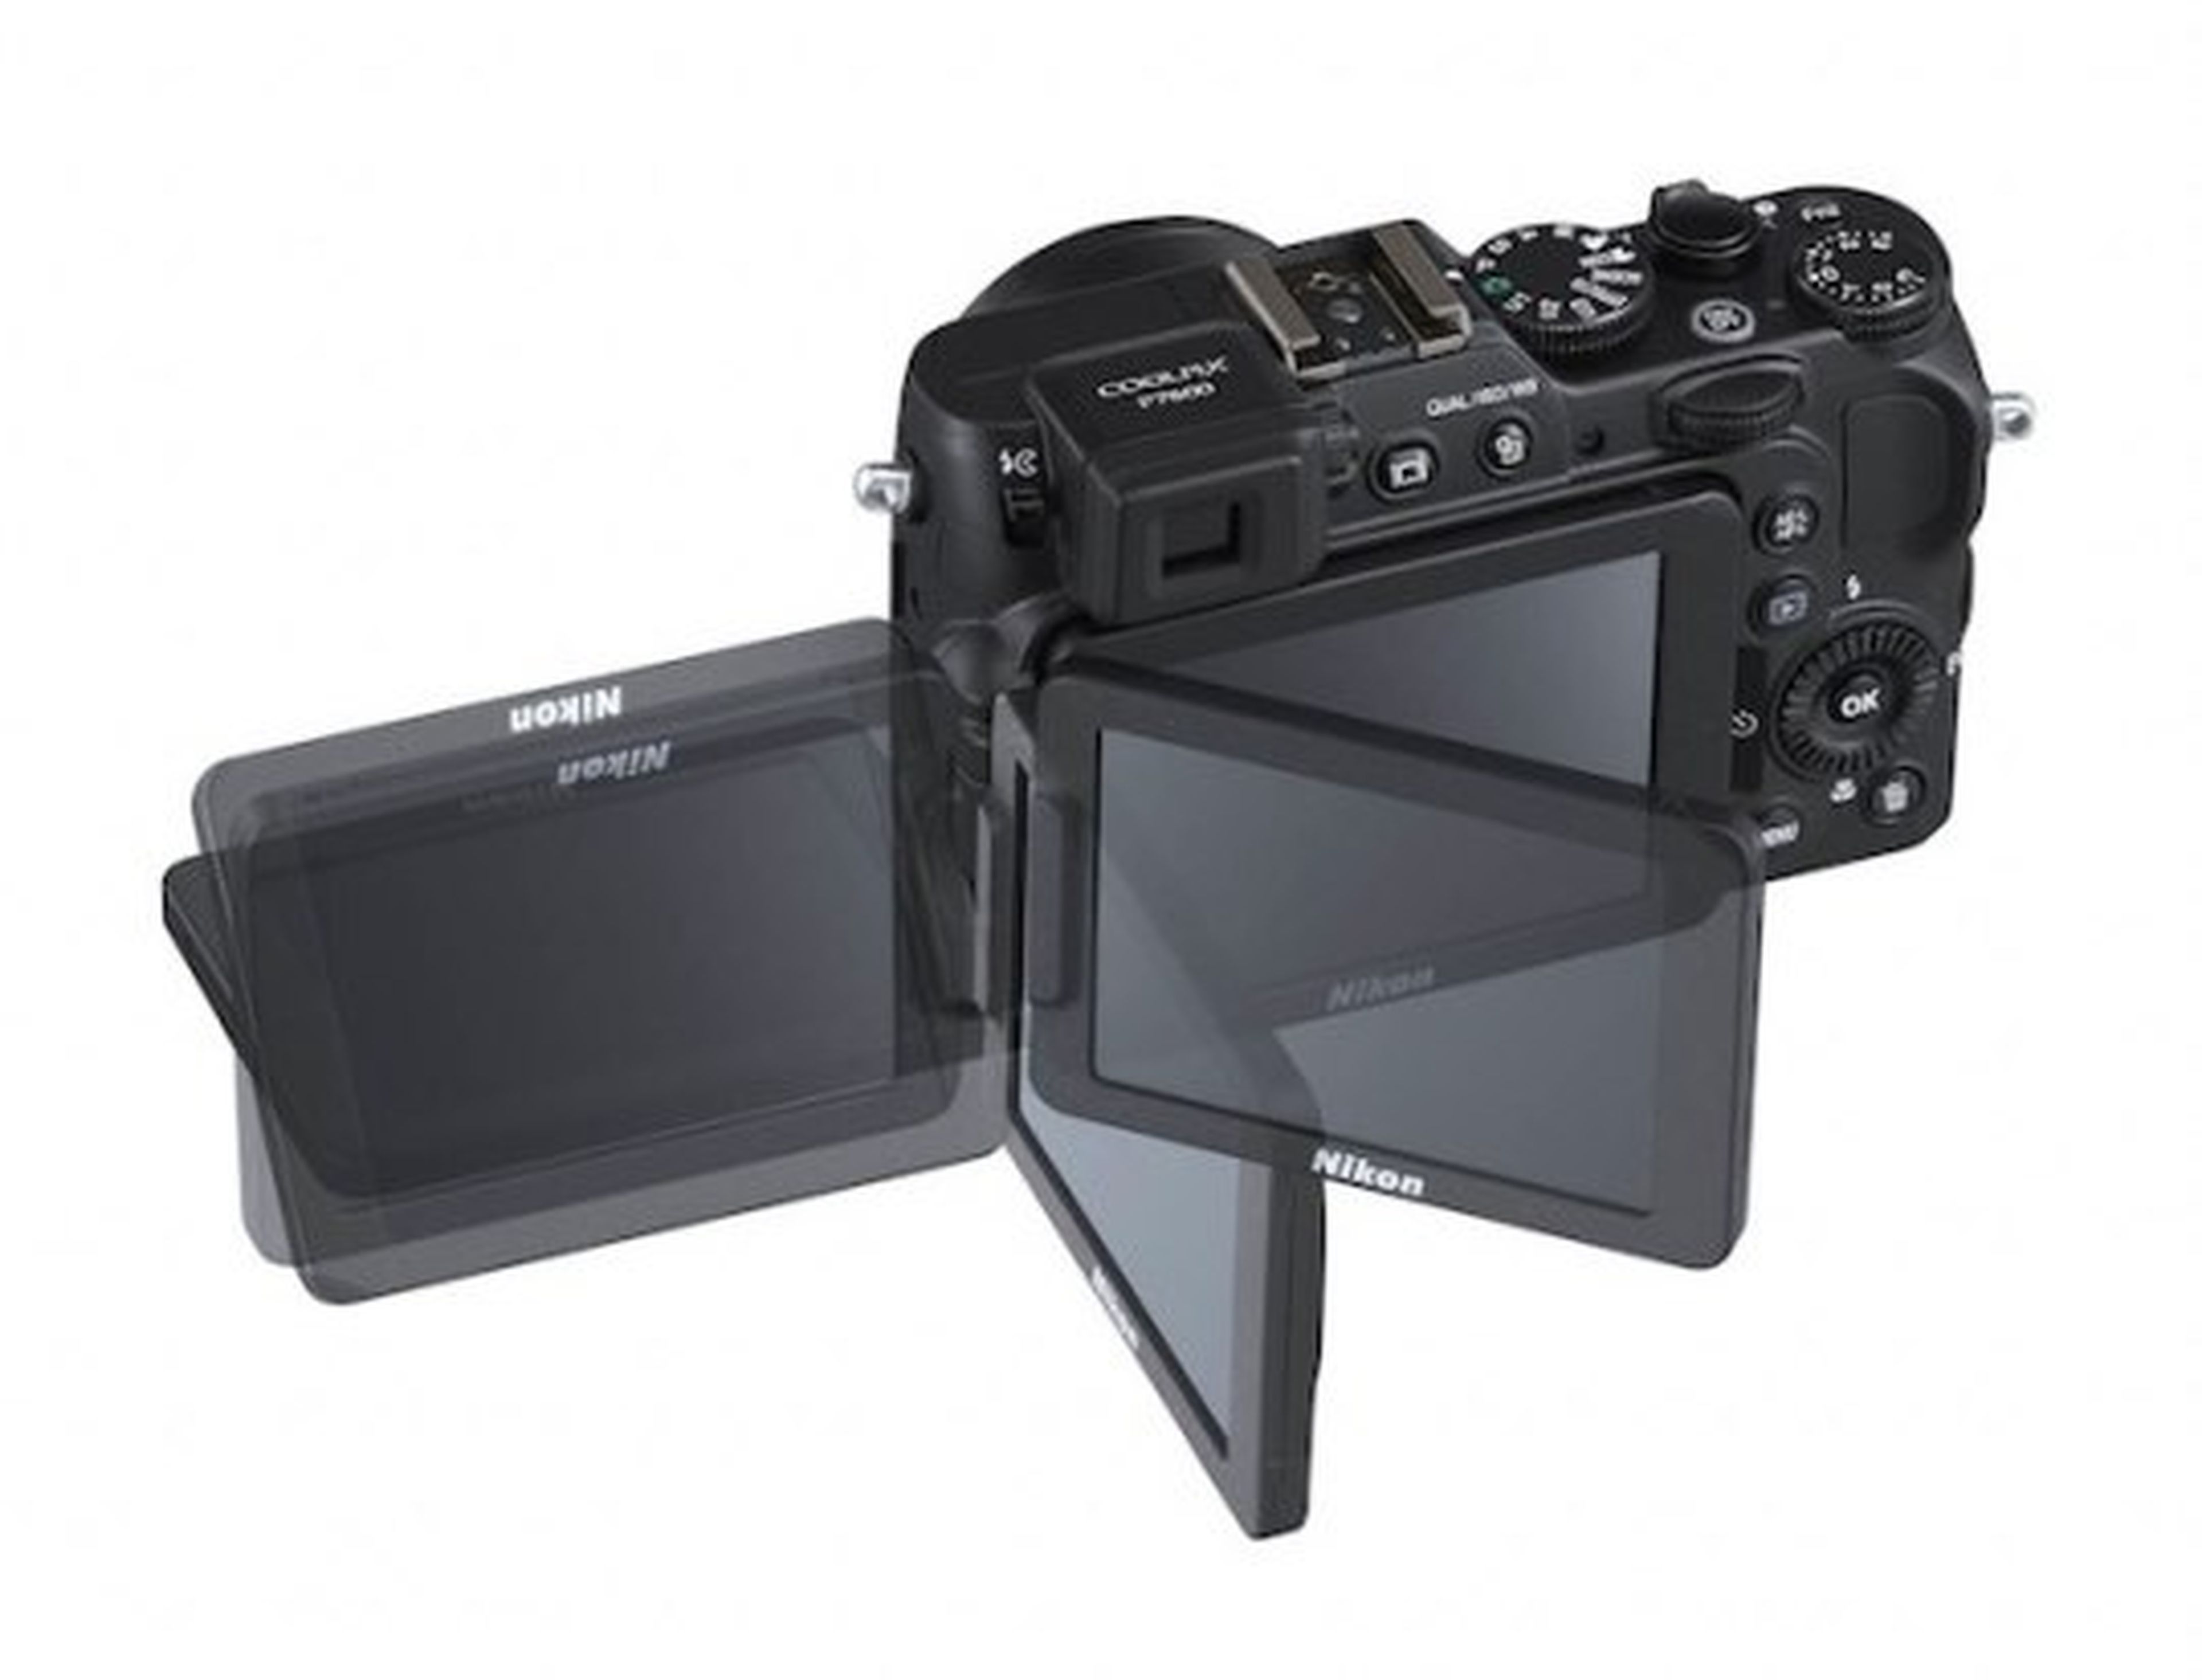 Nikon presenta su nueva cámara Coolpix P7800